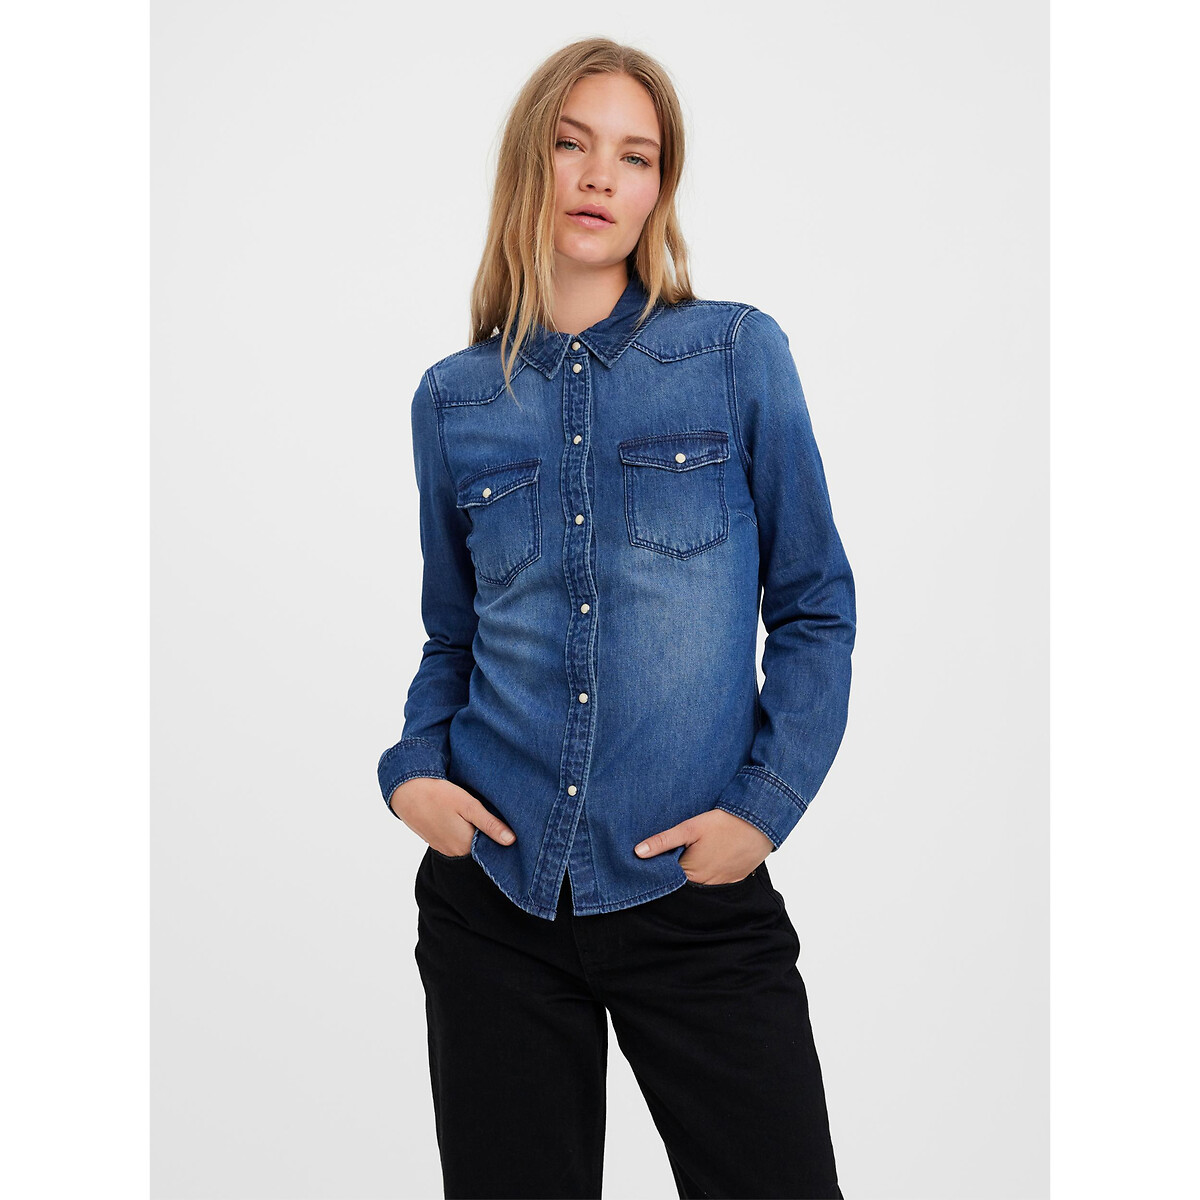 Рубашка из джинсовой ткани XS синий рубашка из джинсовой ткани с длинными рукавами xs синий